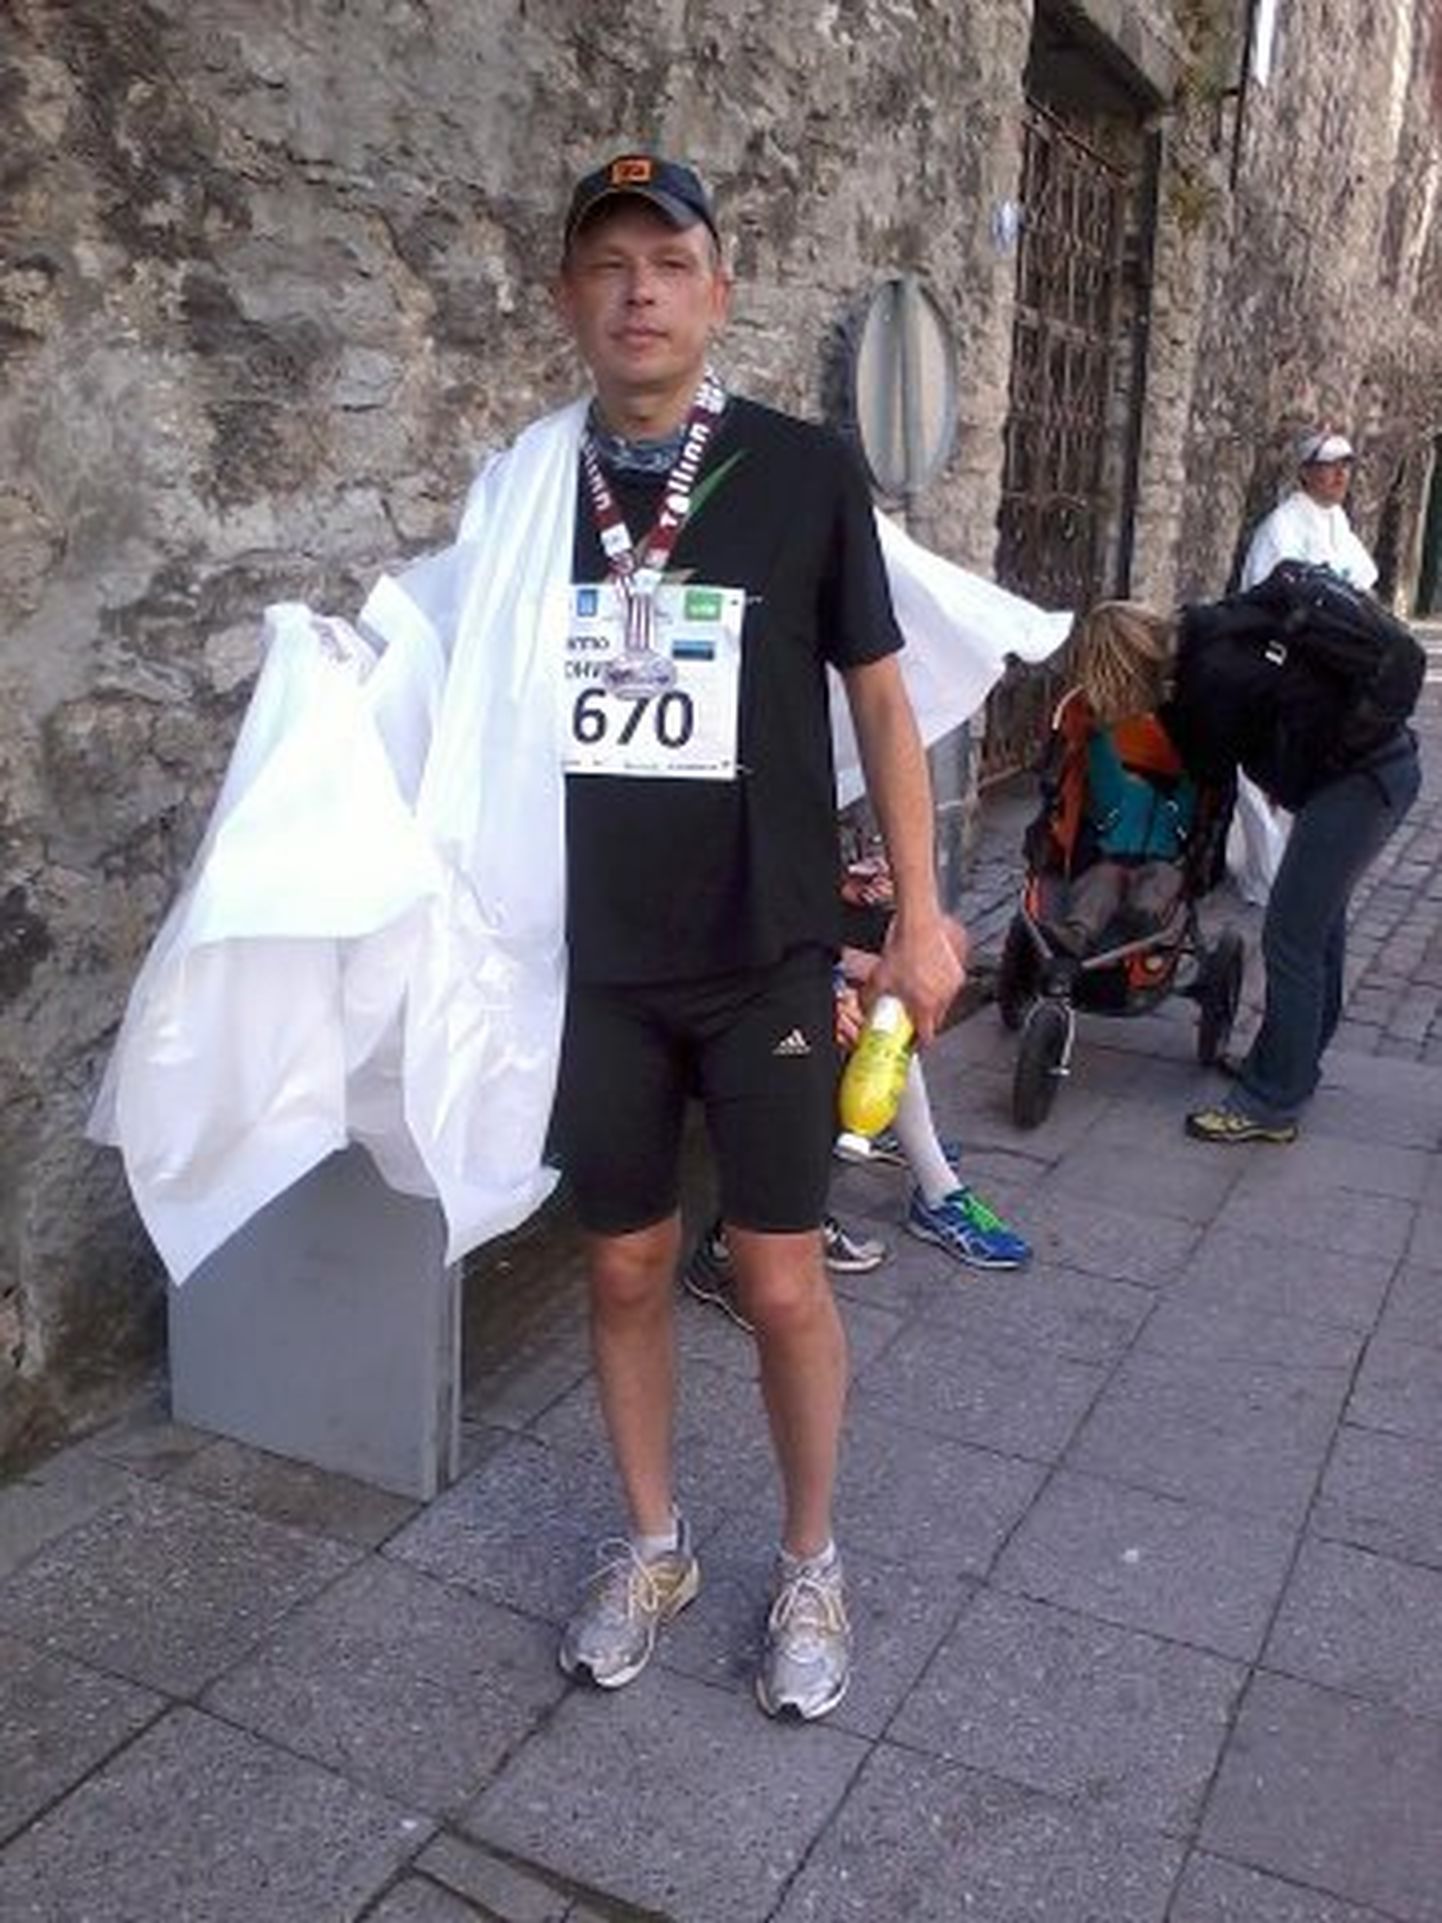 Jõhvilane Tarmo Tohver  oli üks 1659 jooksjast, kes sai pühapäeval Tallinnas hakkama maratoni läbimisega.